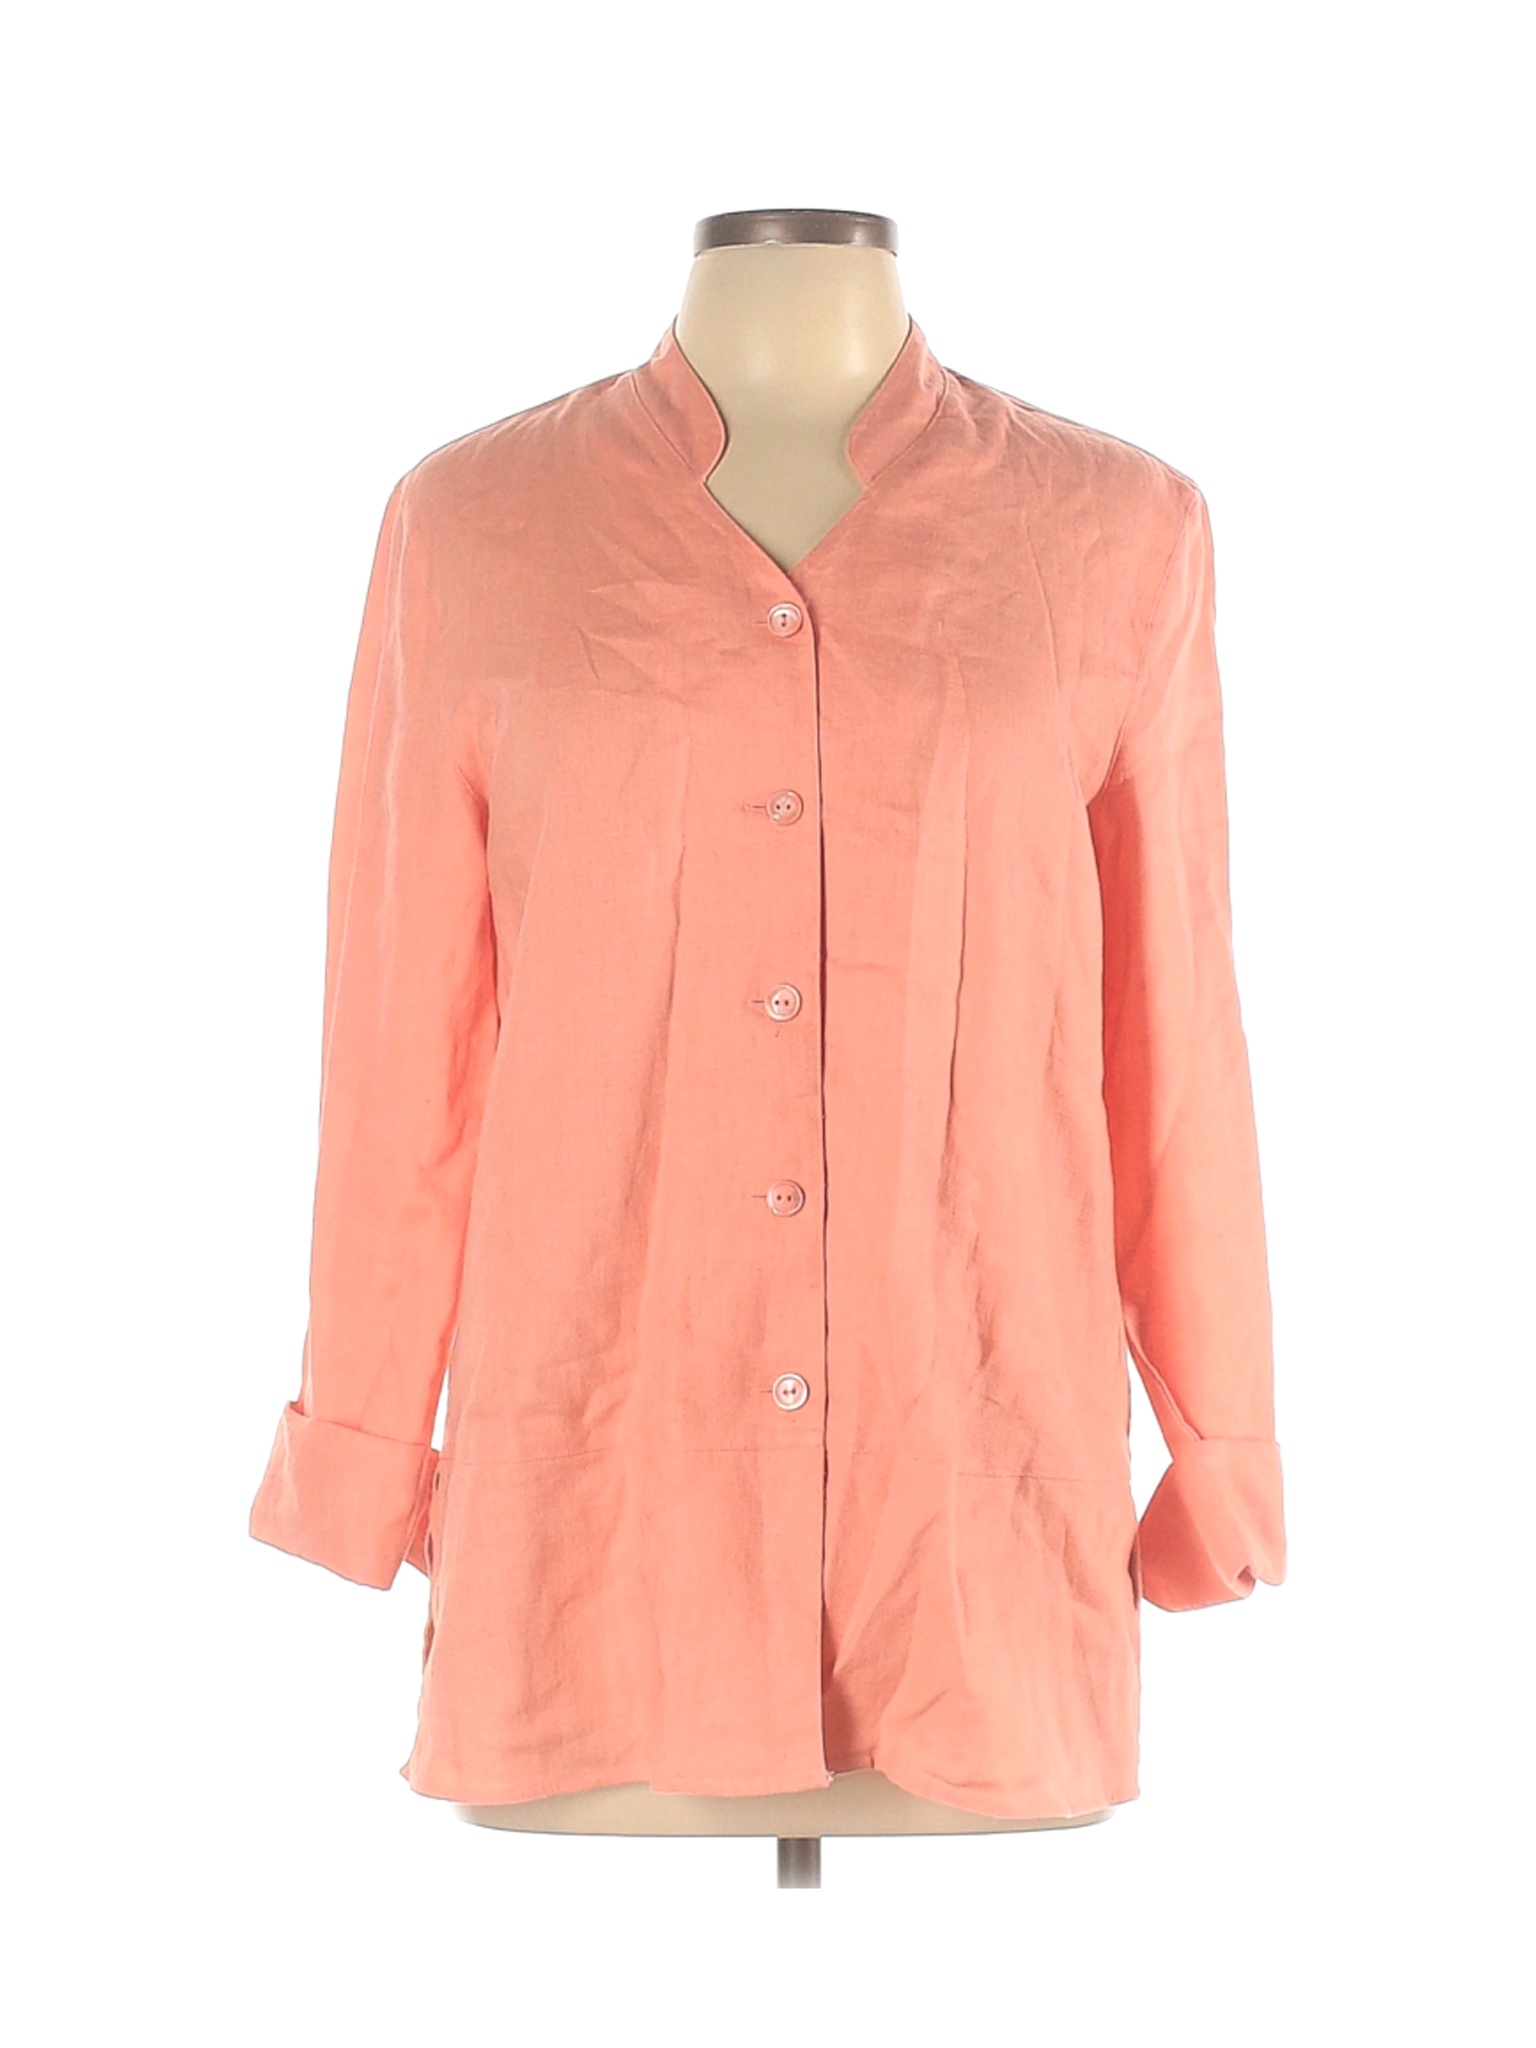 Jillian Jones Women Pink Jacket 10 | eBay